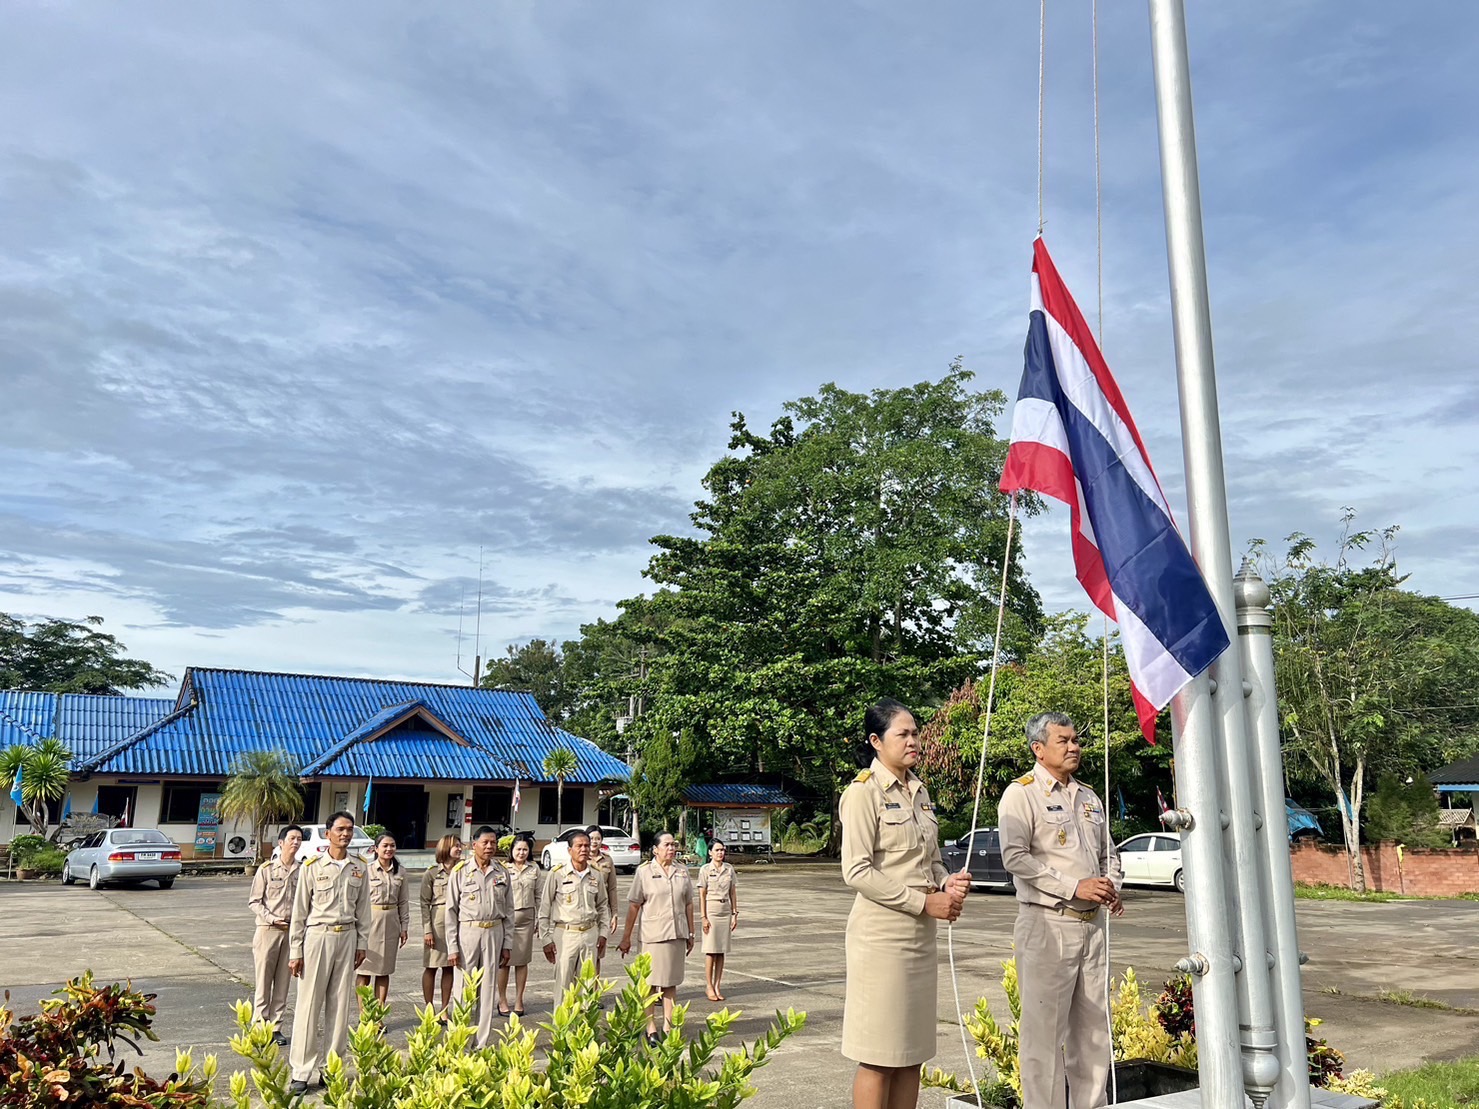 กิจกรรมเคารพธงชาติและร้องเพลงชาติไทย  เนื่องในวันพระราชทานธงชาติไทย